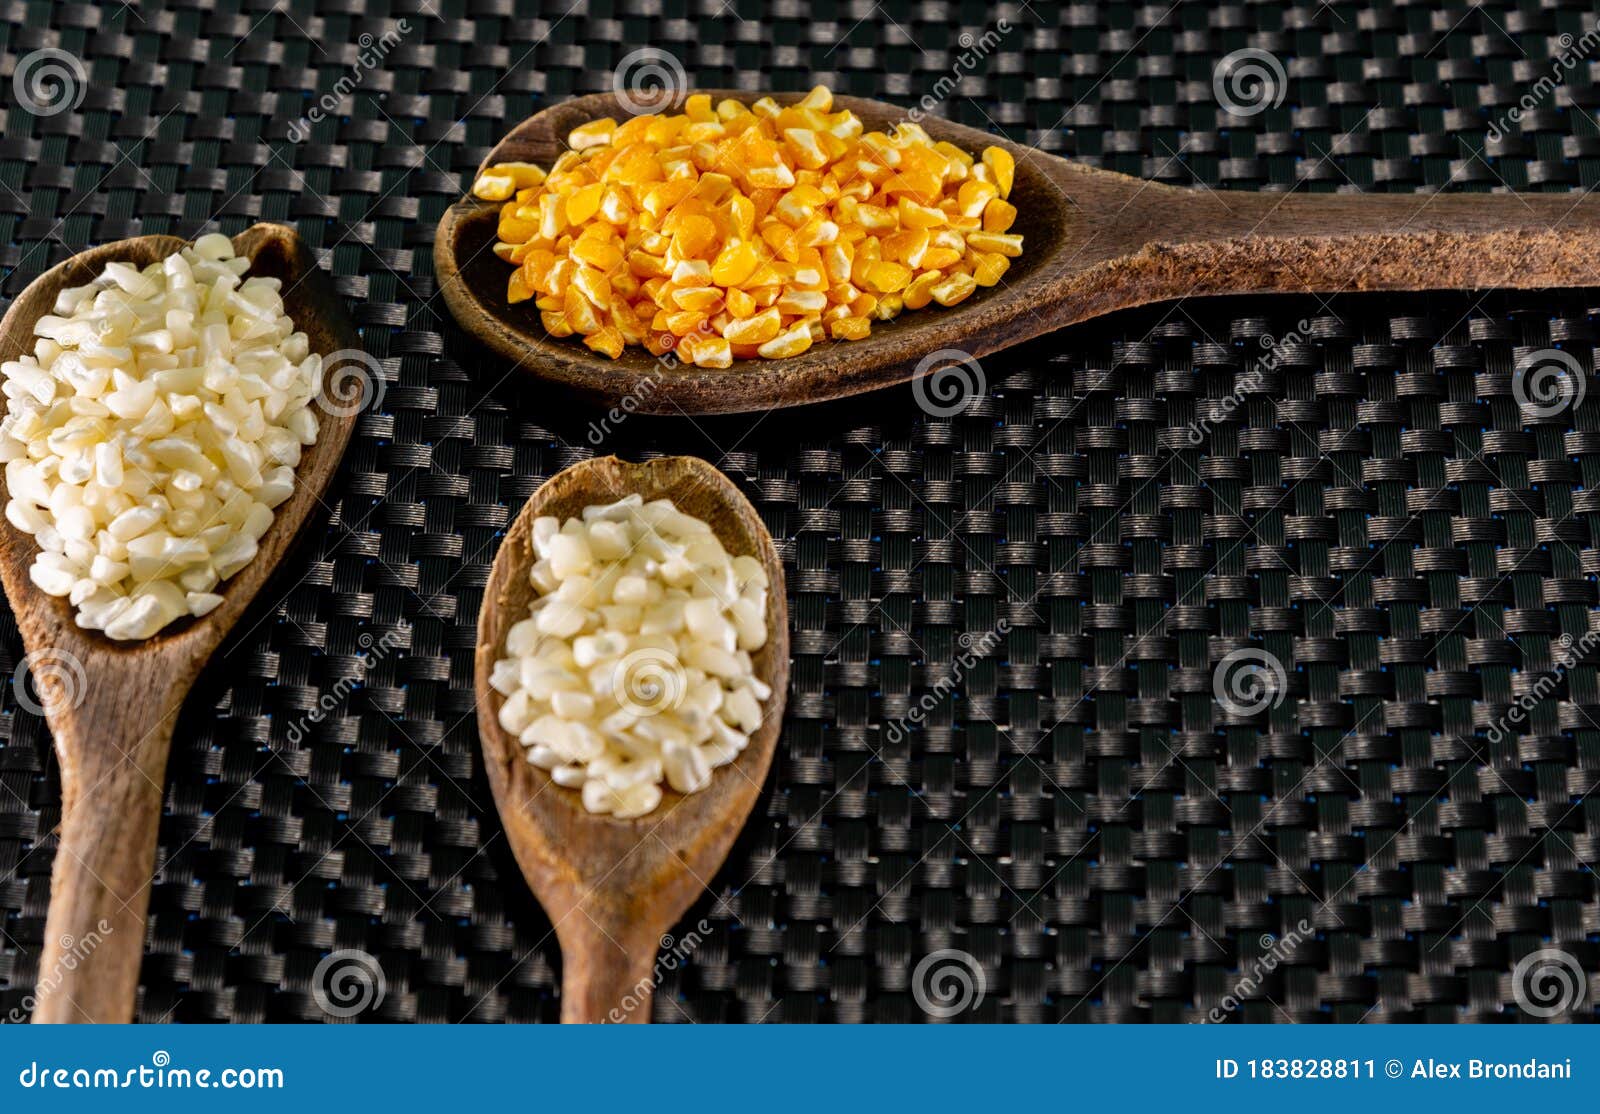 milho de cor branca e amarela para preparar canjica servida em colheres de madeira sobre um fundo escuro